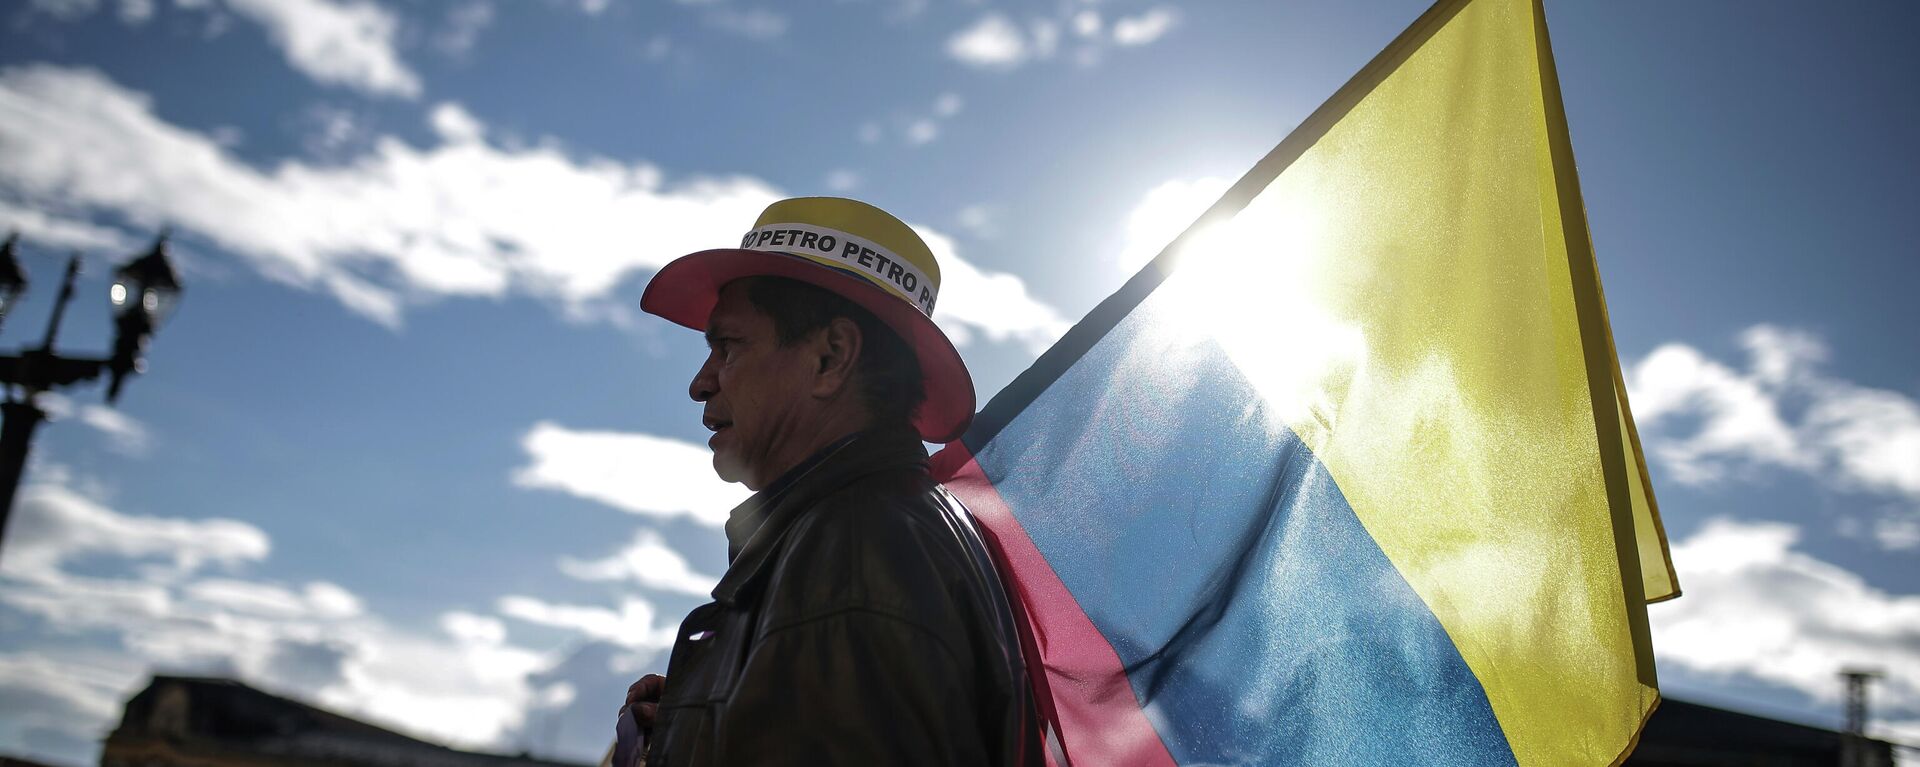 Partidario de Gustavo Petro sostiene la bandera de Colombia - Sputnik Mundo, 1920, 23.11.2022